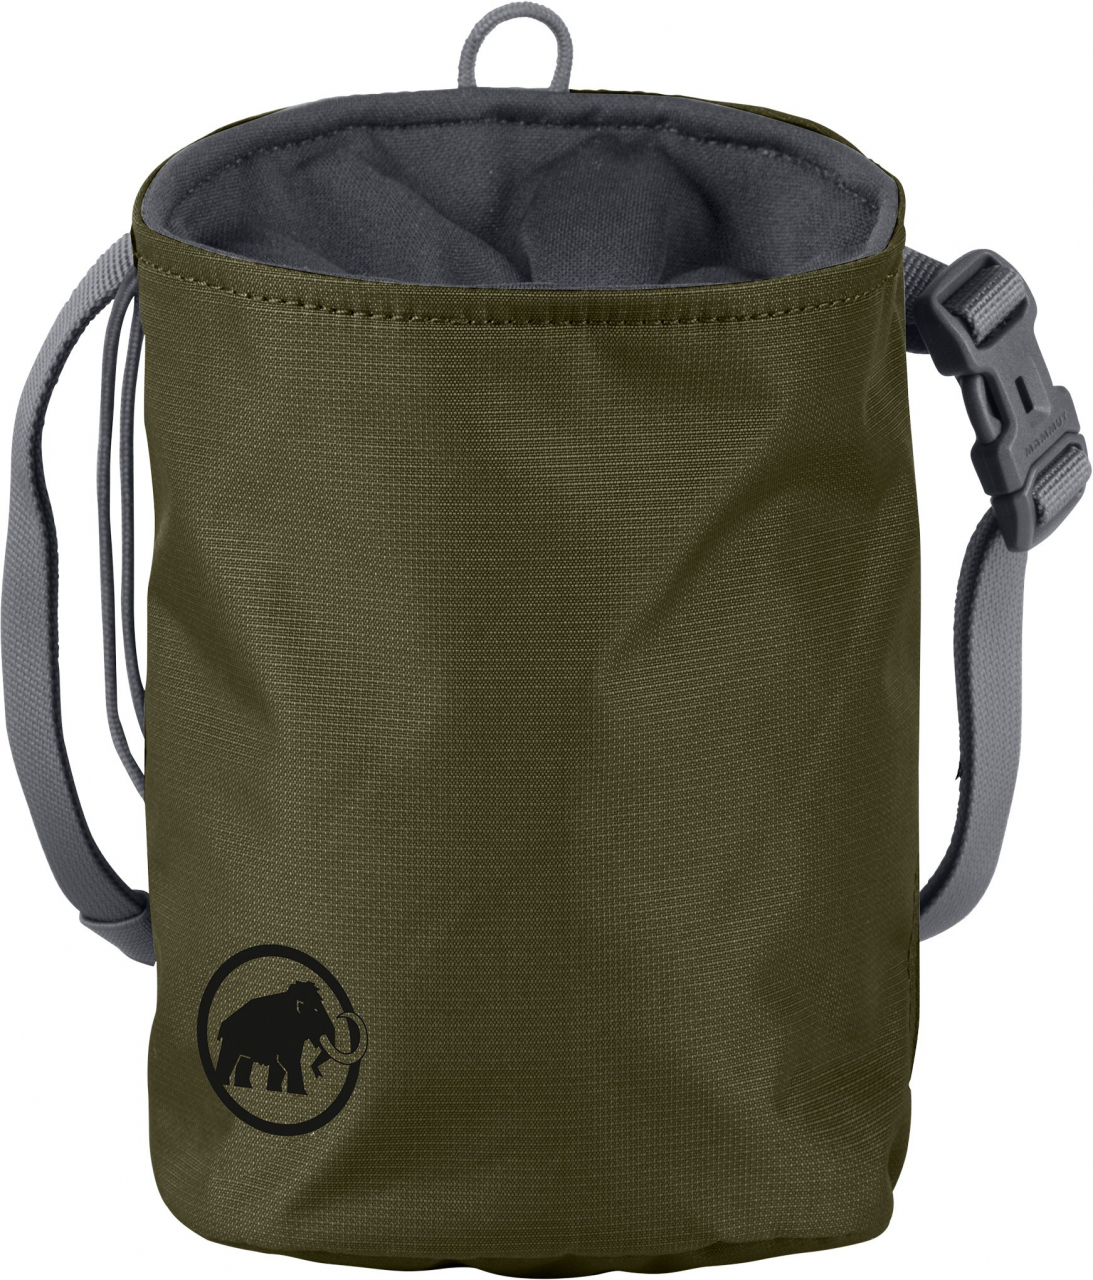 Kletter-Ausrüstung Mammut Togir Chalk Bag